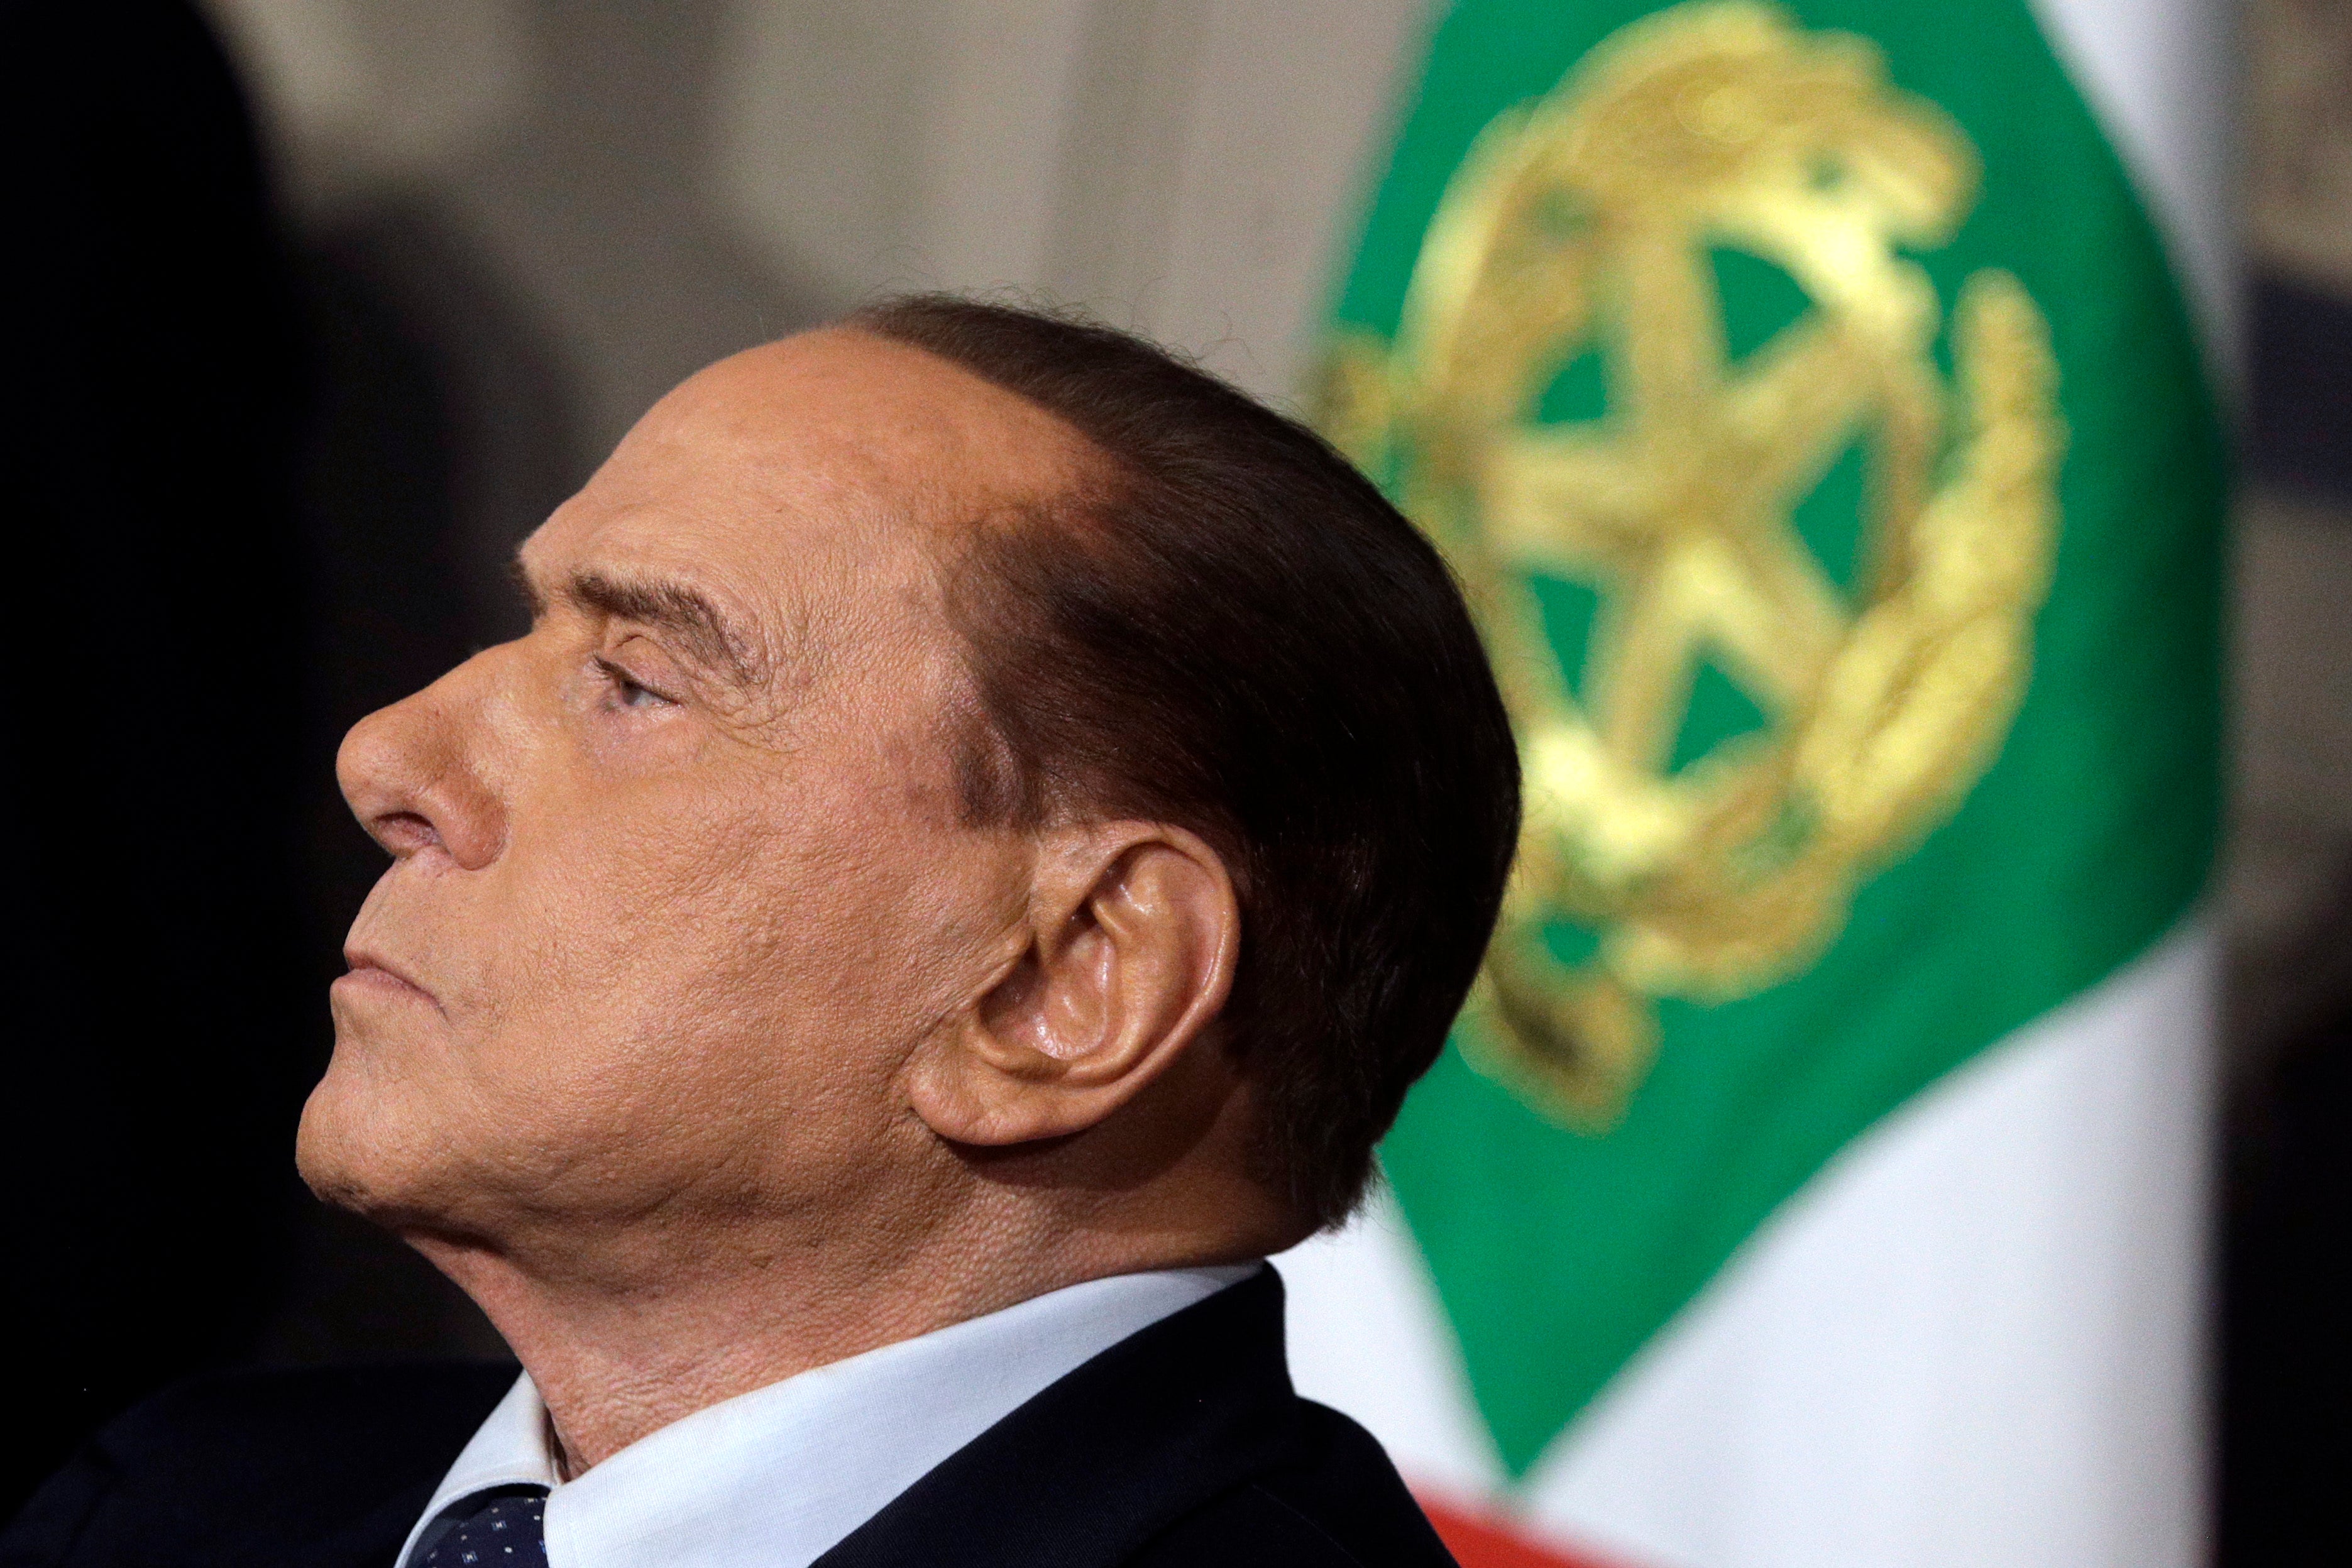 Berlusconi in Rome in 2018